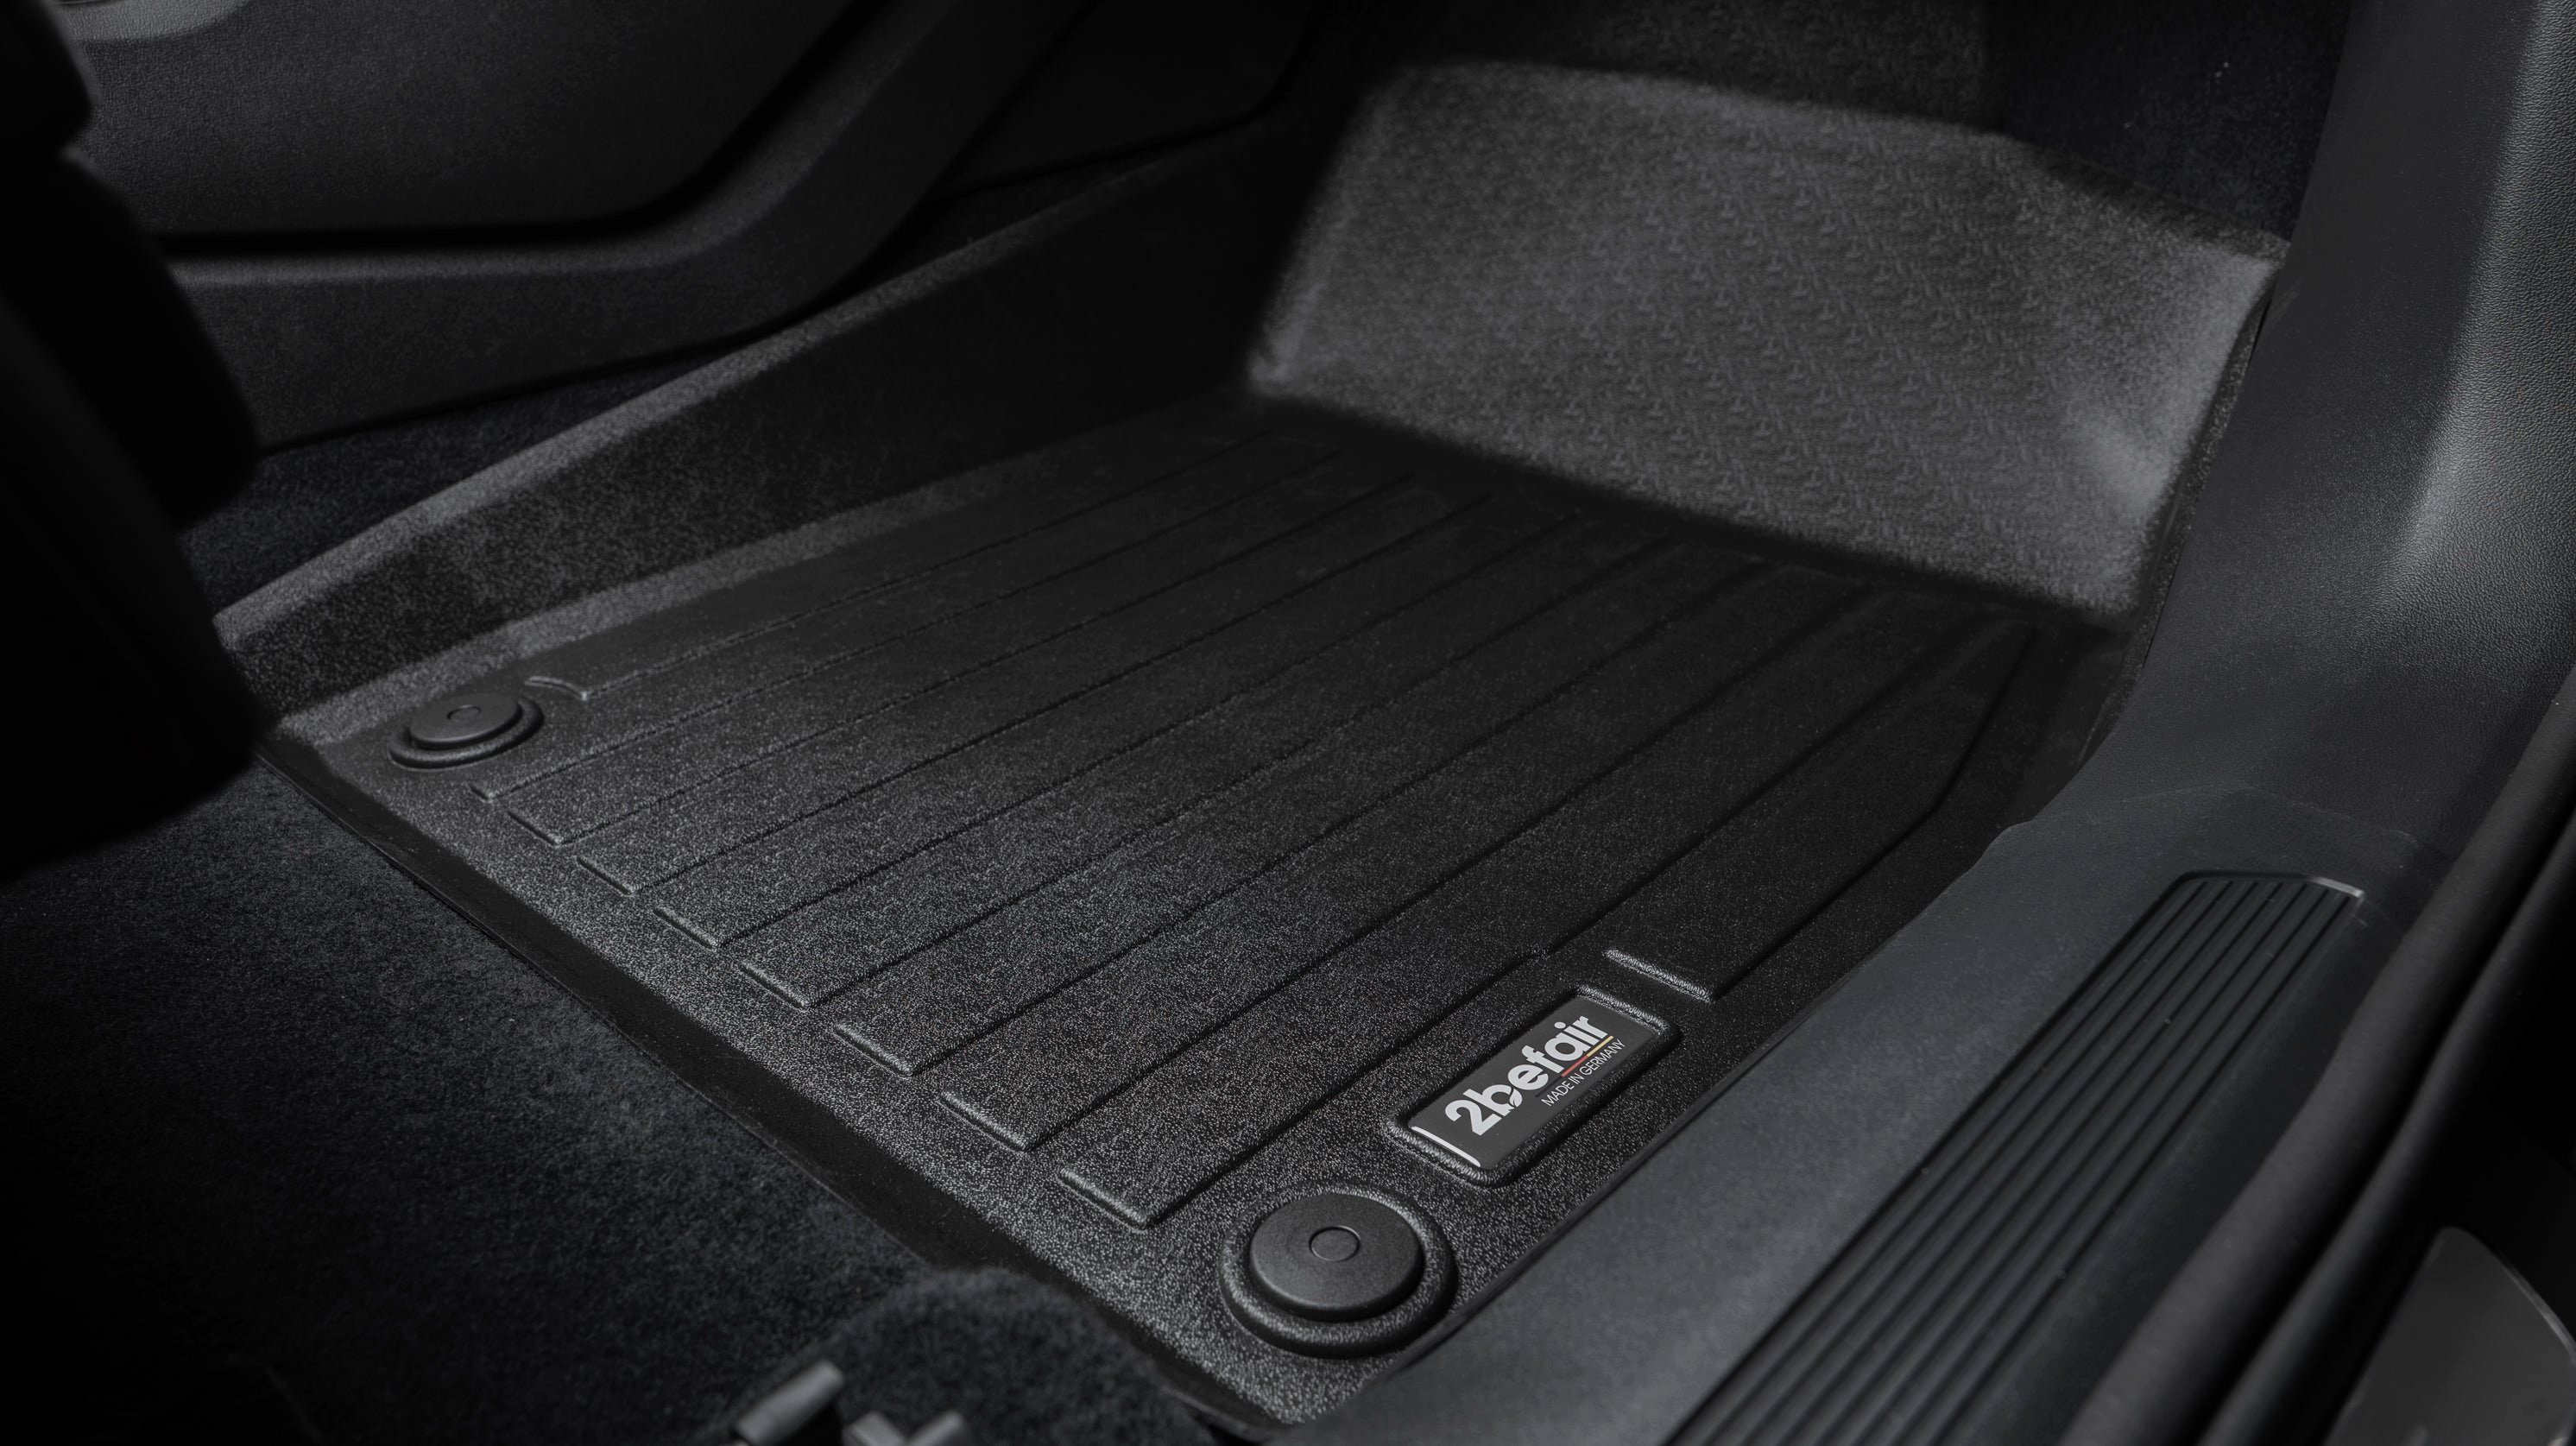 Auto-Fußmatte den e-tron Audi Q4 2befair für Set Gummimatten Innenraum